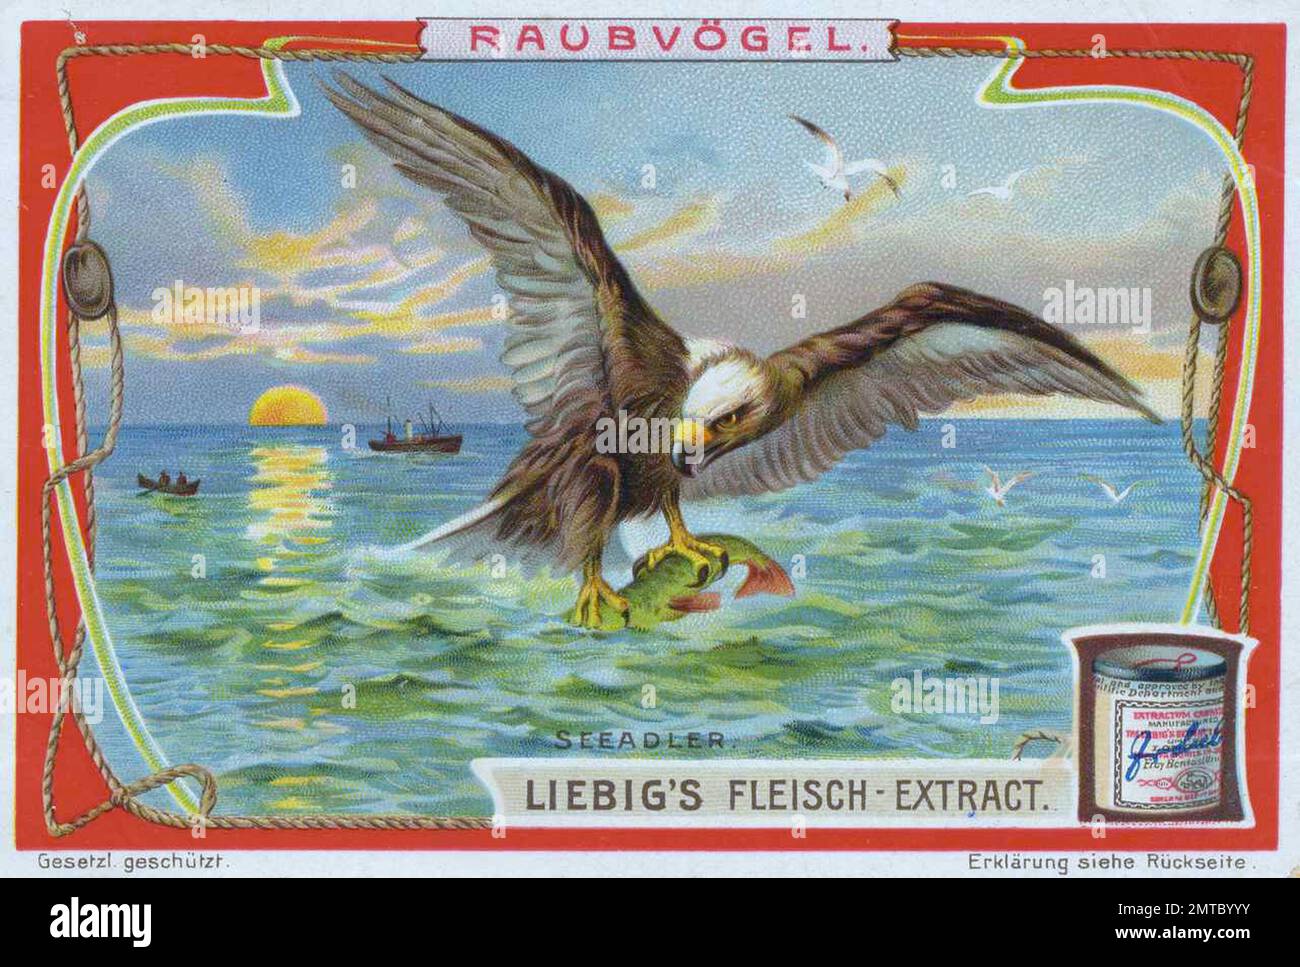 Bilderserie Raubvögel, Seeadler, digital restaurierte Reproduktion eines Sammelbildes von ca 1900, gemeinfrei, genaues Datum unbekannt  / Stock Photo